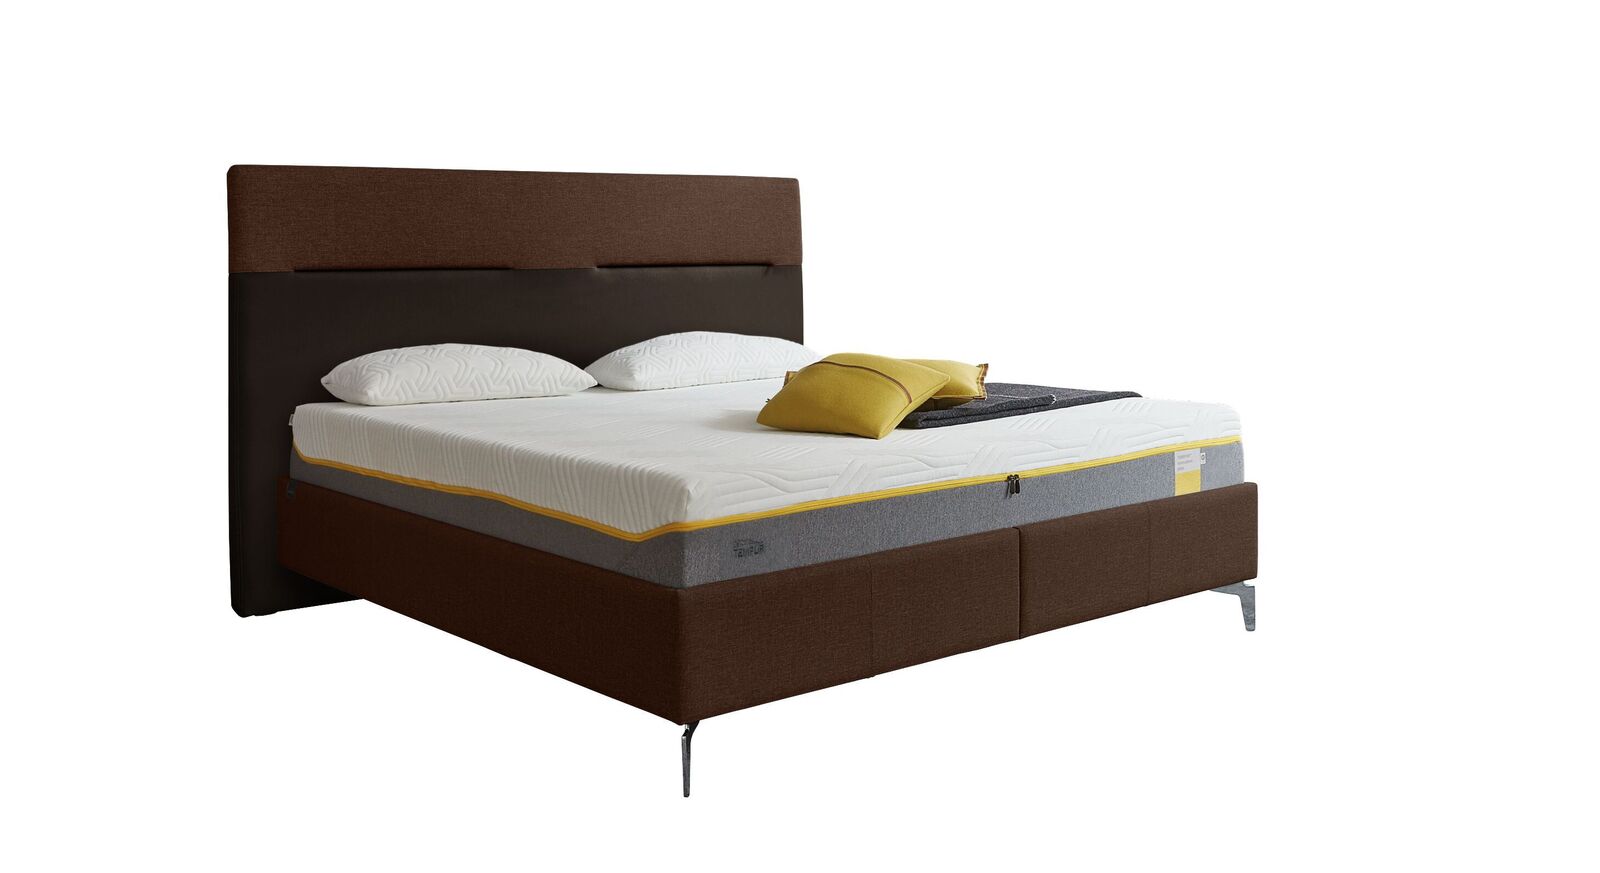 TEMPUR Bett Relax Texture mit Bezug in Webstoff und Kunstleder in Dunkelbraun